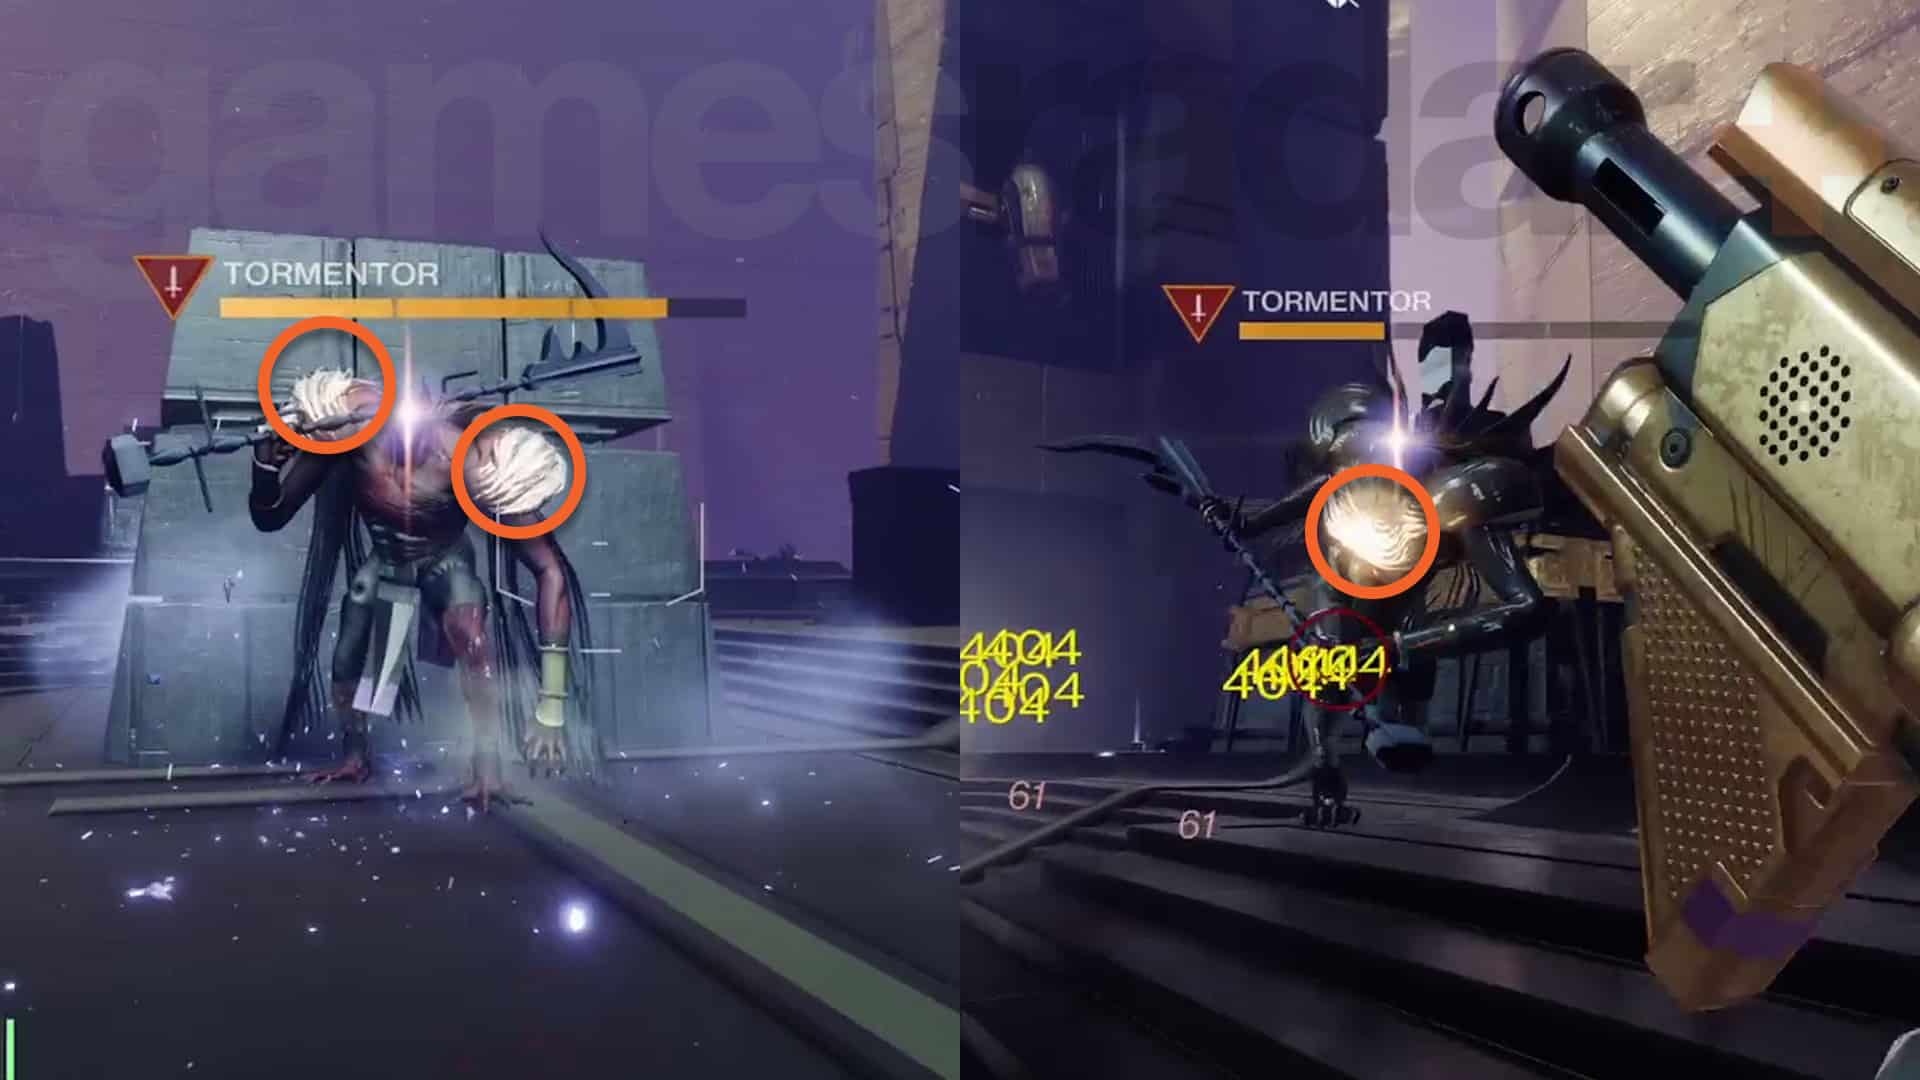 Image de comparaison des points faibles de Destiny 2 Tormentor